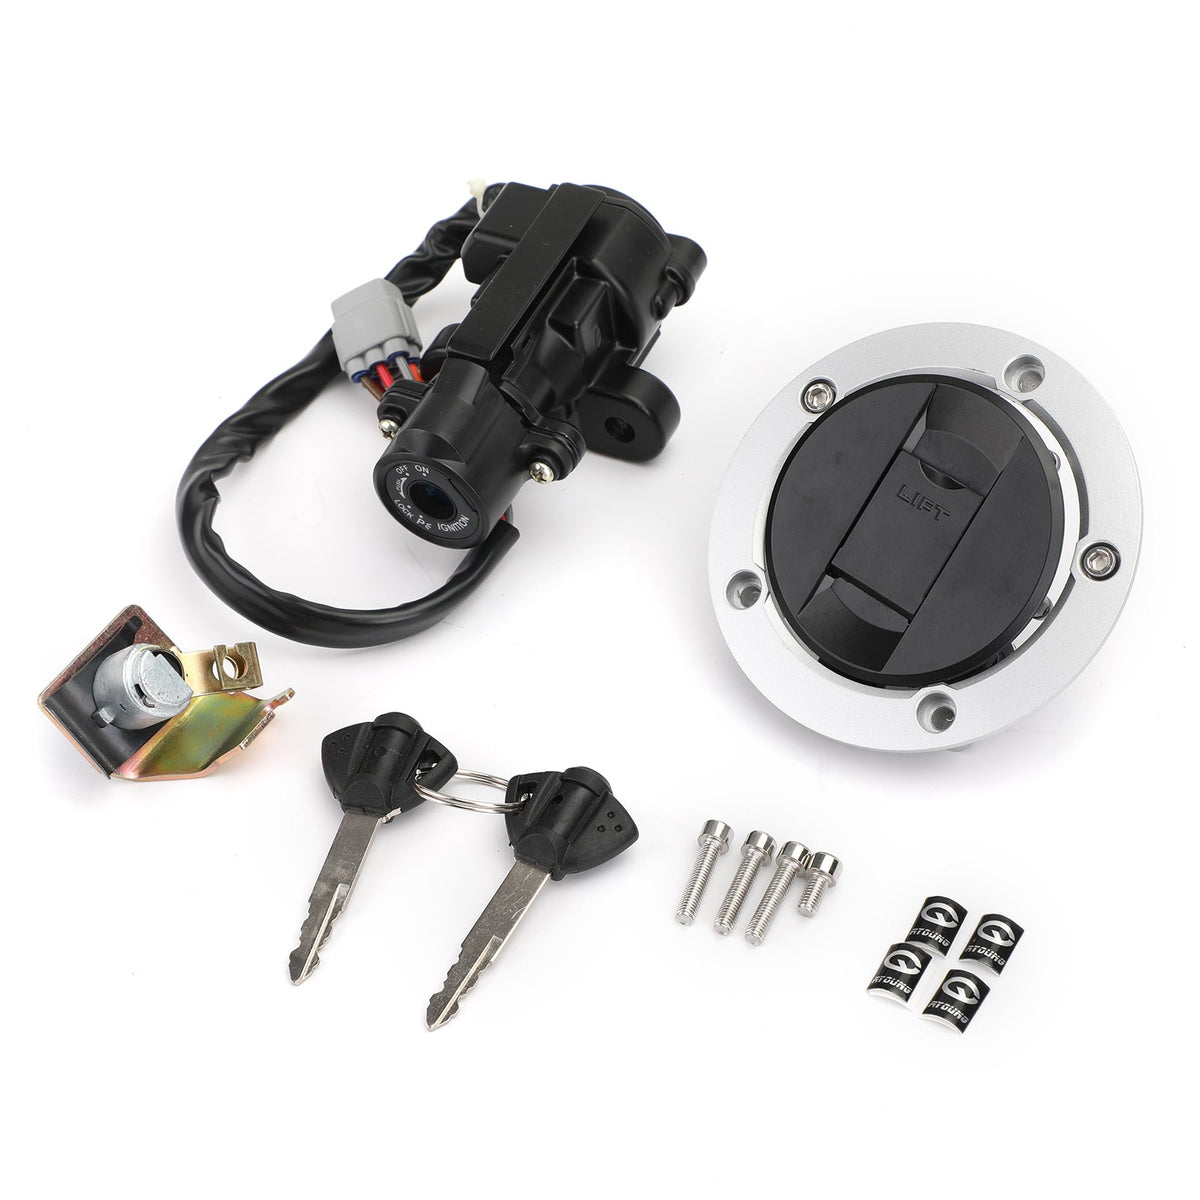 2014-2016 Suzuki DL1000 V-Strom Ignition Switch Fuel Gas Cap Seat Lock